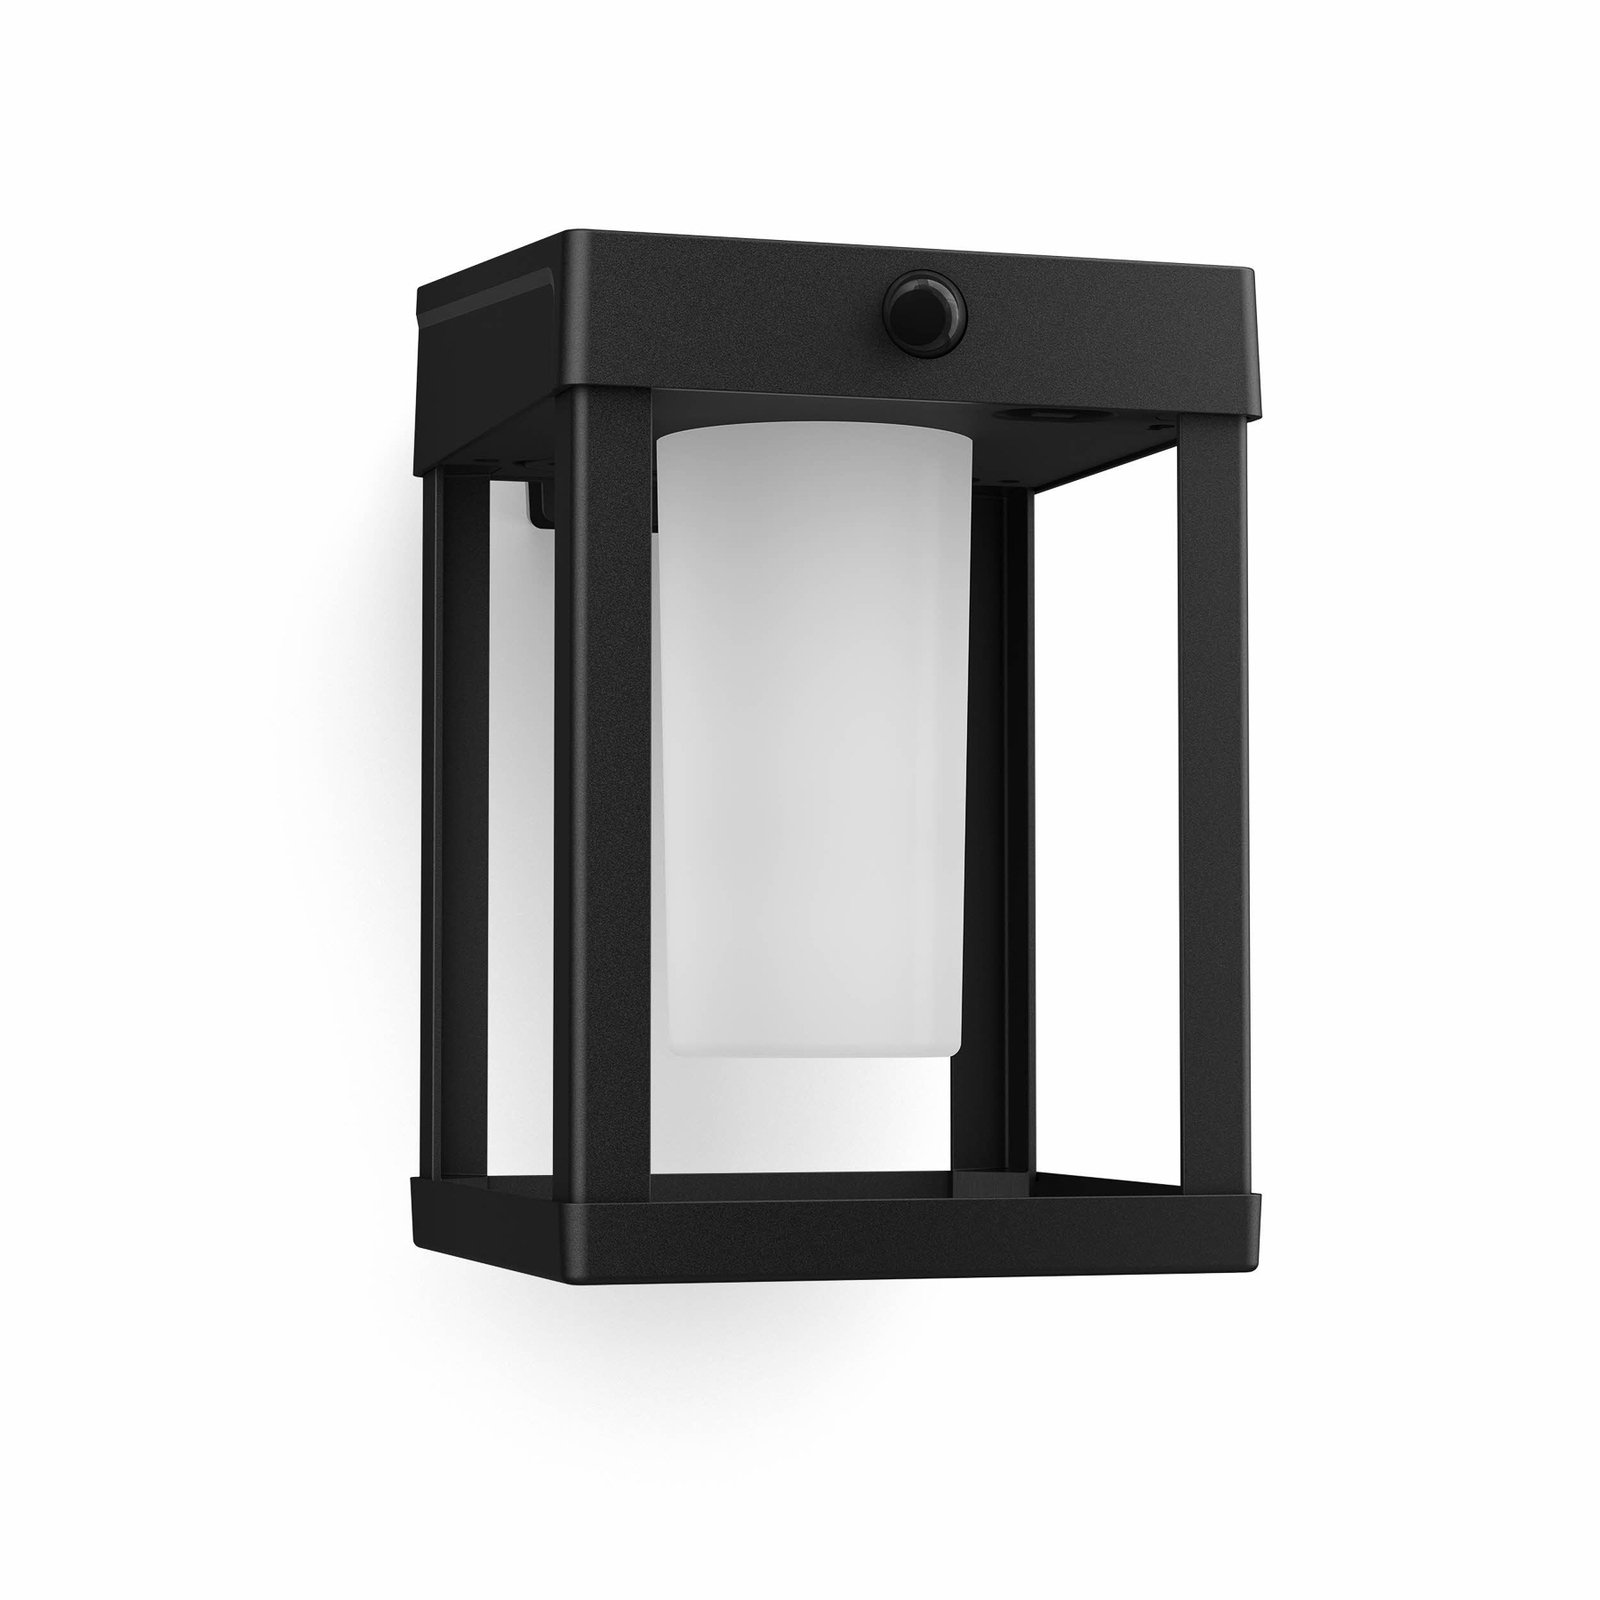 Philips LED wandlamp Camille, zwart/wit, 14 x 14 cm